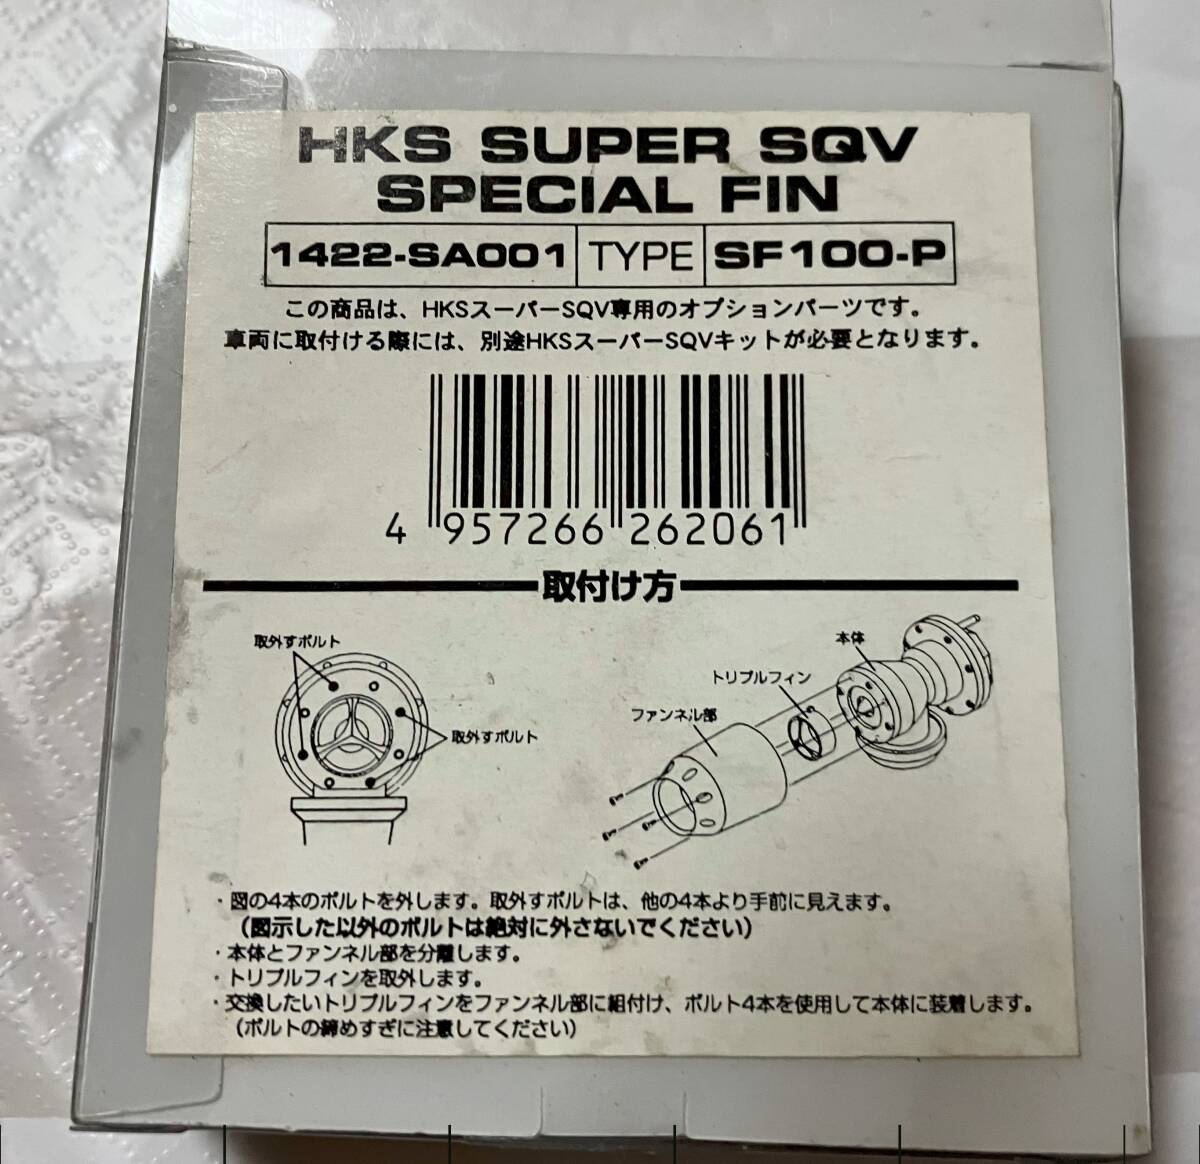 HKS Super SQV Special FIN 1422-SA001 SF100-Pの画像2